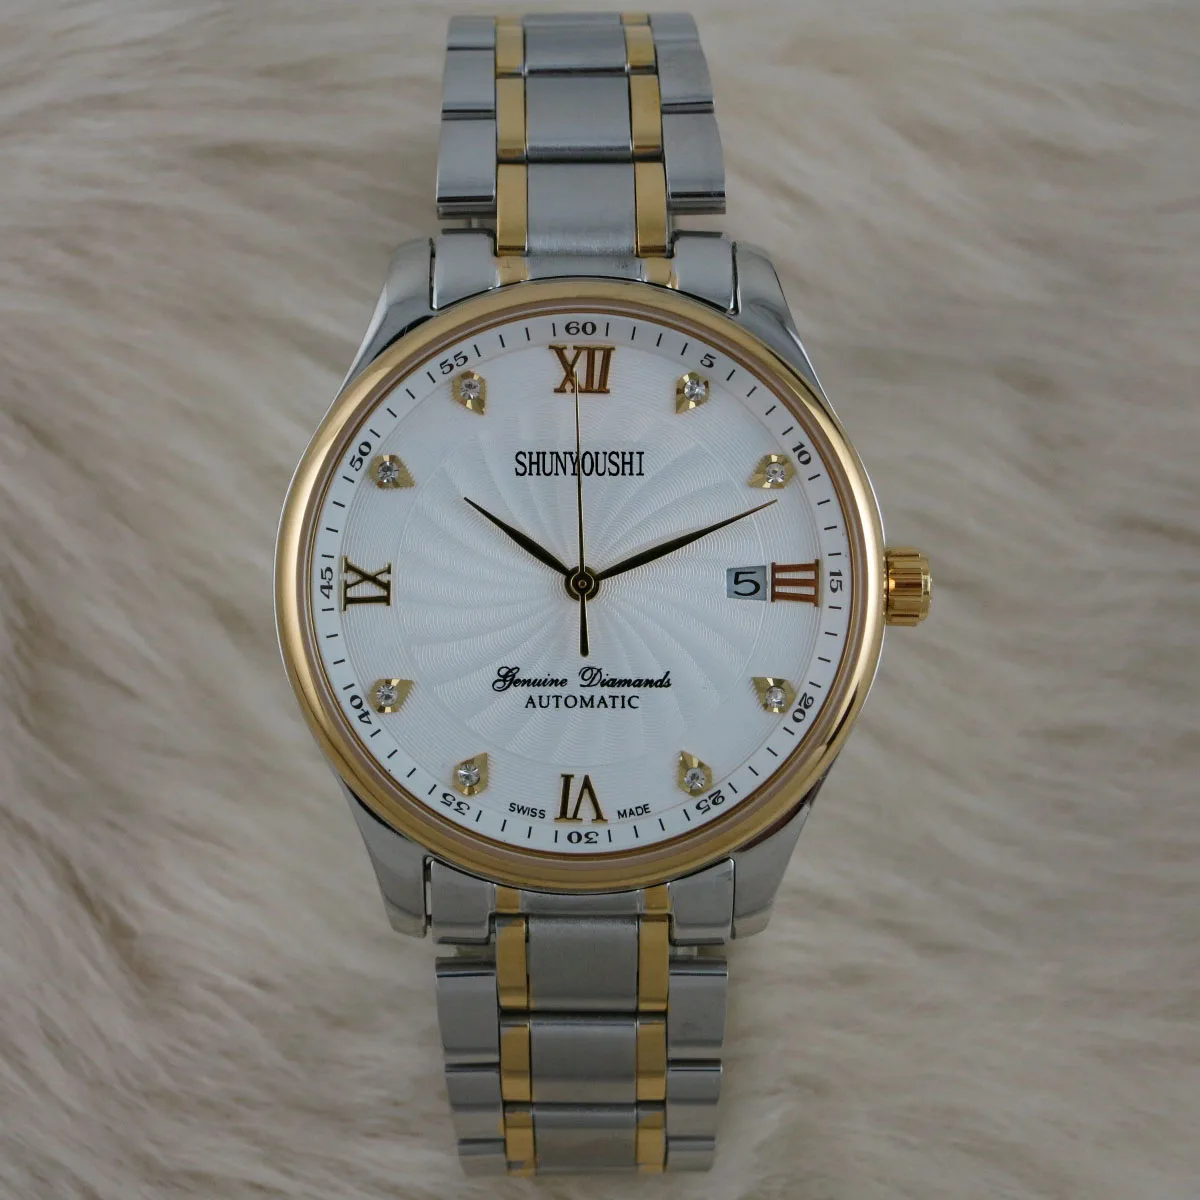 WG06522 мужские часы Топ бренд подиум роскошный европейский дизайн автоматические механические часы